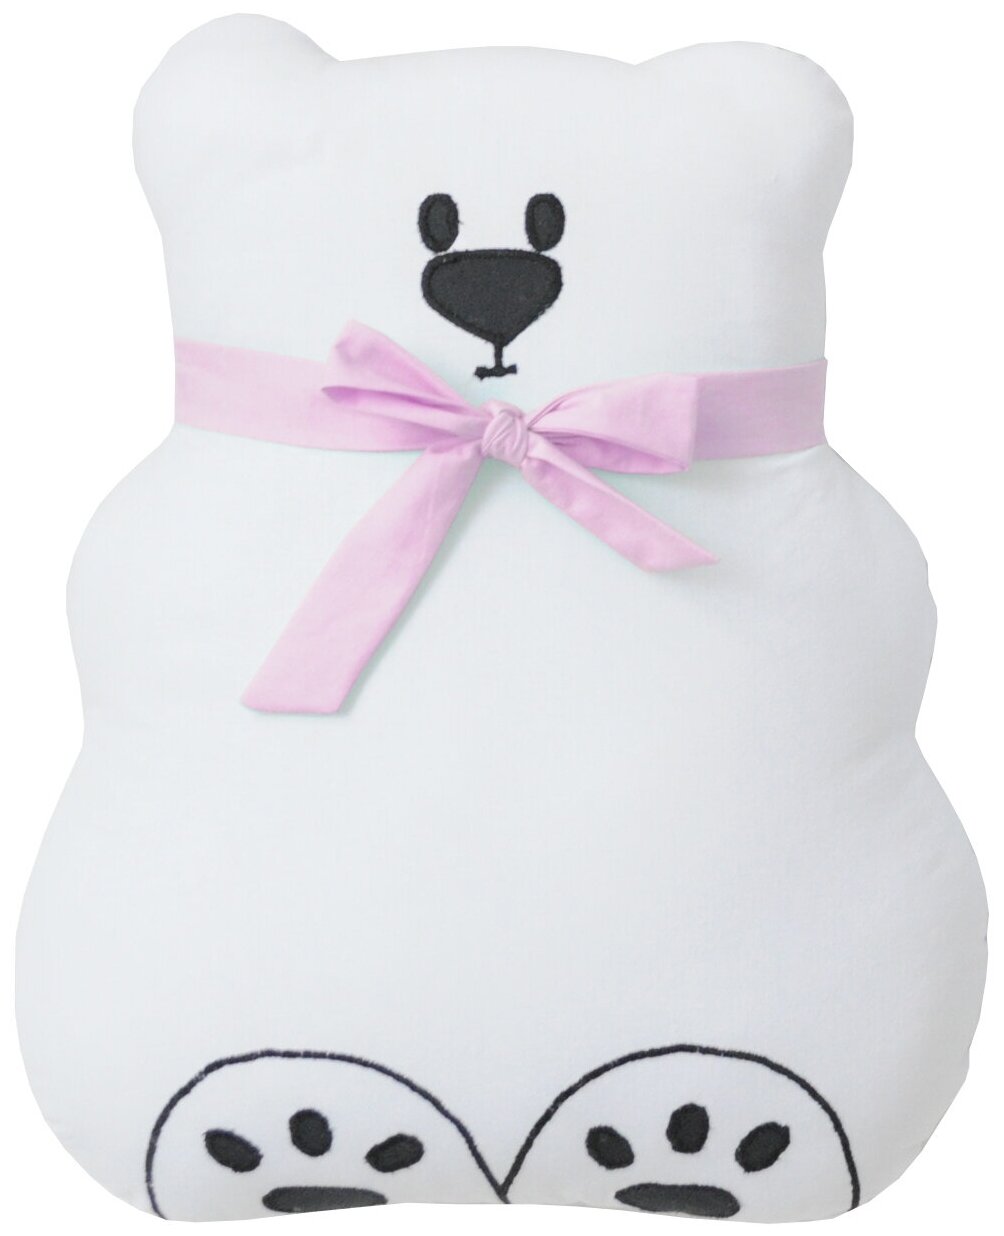 Подушка-бортик "Мишка белый с розовым бантиком", 35*30 см, 100% хлопок